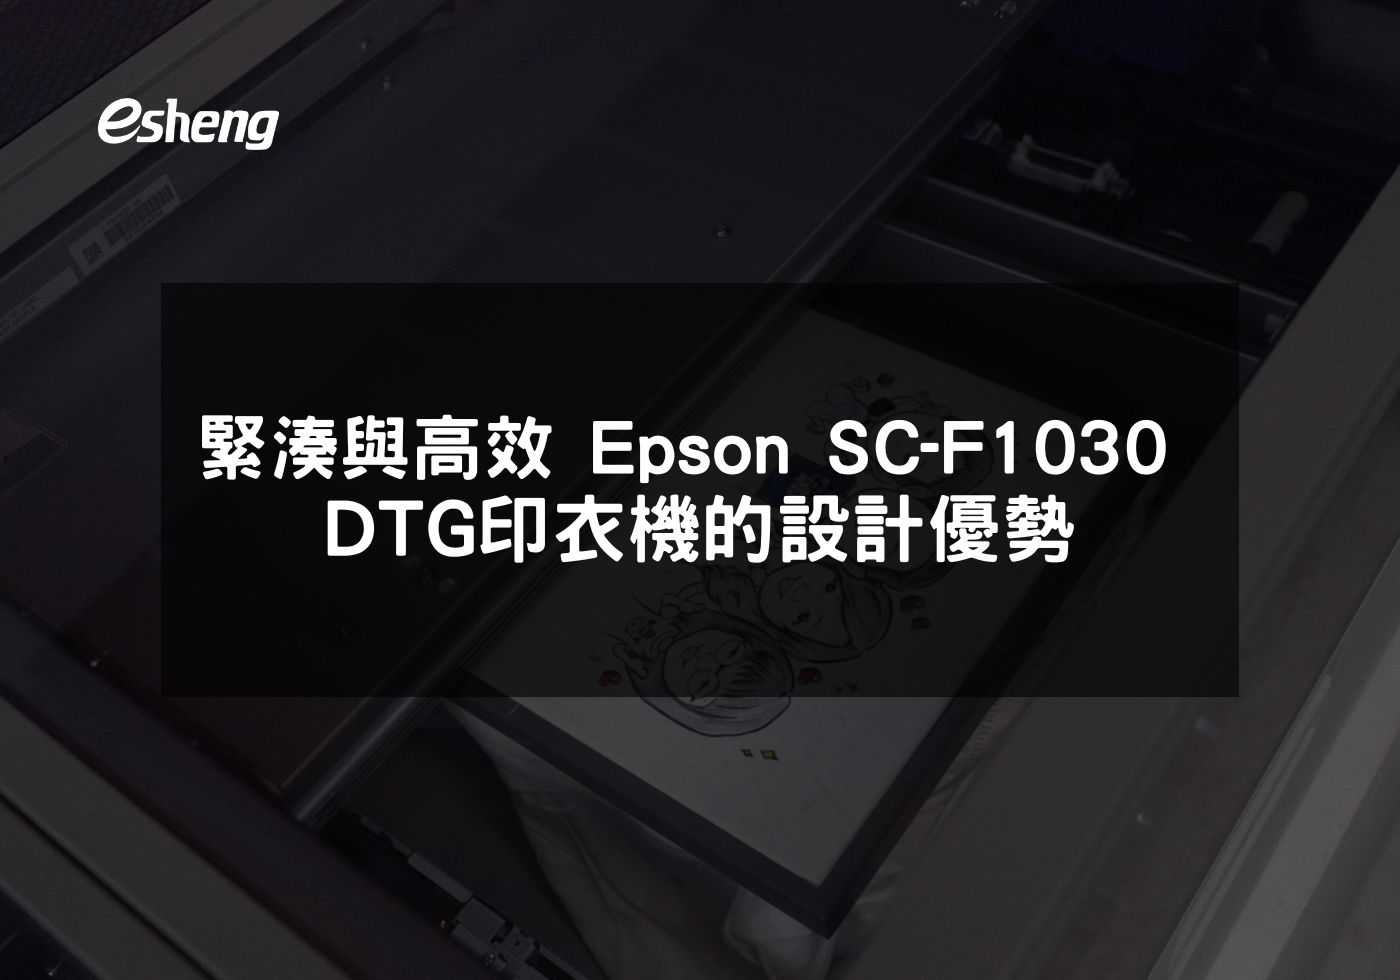 緊湊與高效 Epson SC-F1030 DTG印衣機的設計優勢